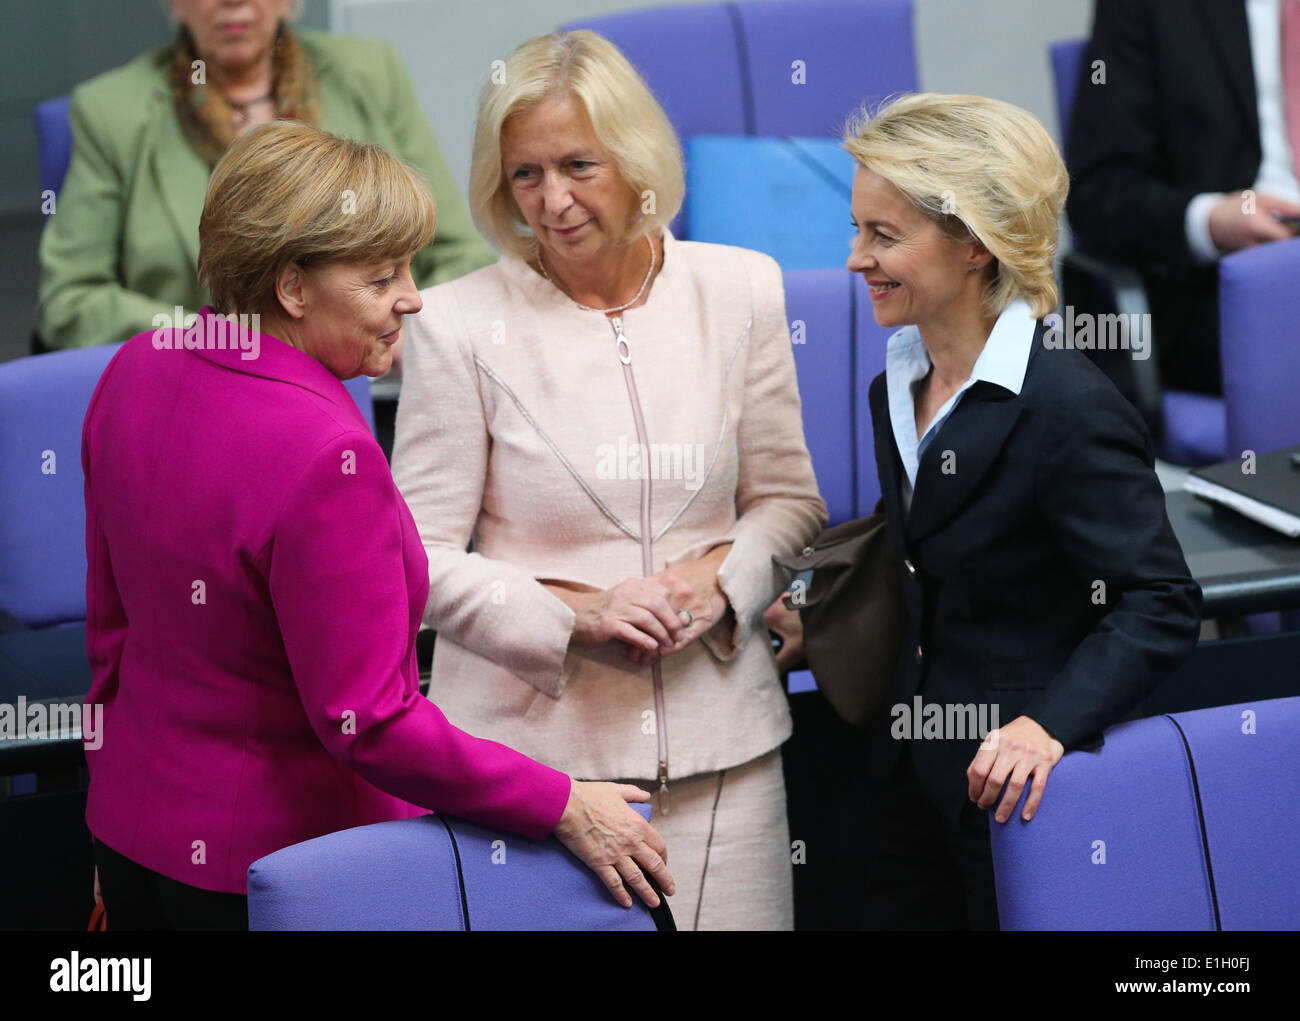 Berlin, Allemagne. 4 juin, 2014. (L-R) La chancelière allemande Angela Merkel, le ministre allemand de l'éducation et de recherche Johanna Wanka et le ministre allemand de la défense, Ursula von der Leyen, assister à une session de réunion au Bundestag, la chambre basse du parlement, à Berlin, Allemagne, le 4 juin 2014. Le Sommet du G7 pour l'ensemble de Bruxelles les 4 et 5 juin portera sur la situation de l'Ukraine, de la Russie, de l'économie mondiale et la sécurité énergétique, conformément à l'ordre du jour préliminaire dévoilé par l'Union européenne (UE). Credit : Zhang Fan/Xinhua/Alamy Live News Banque D'Images